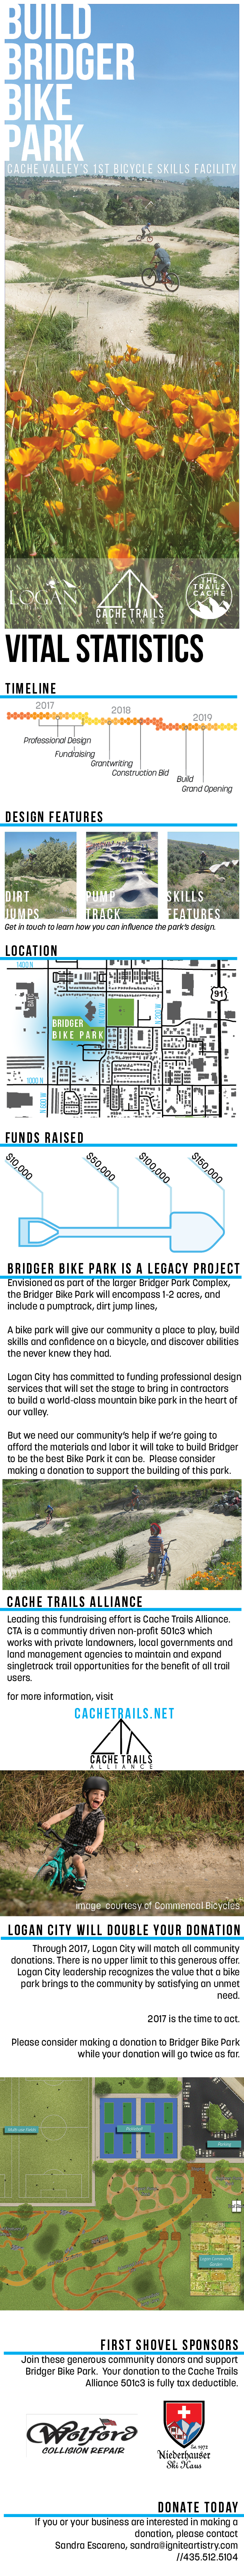 fundraising details about Bridger Bike park